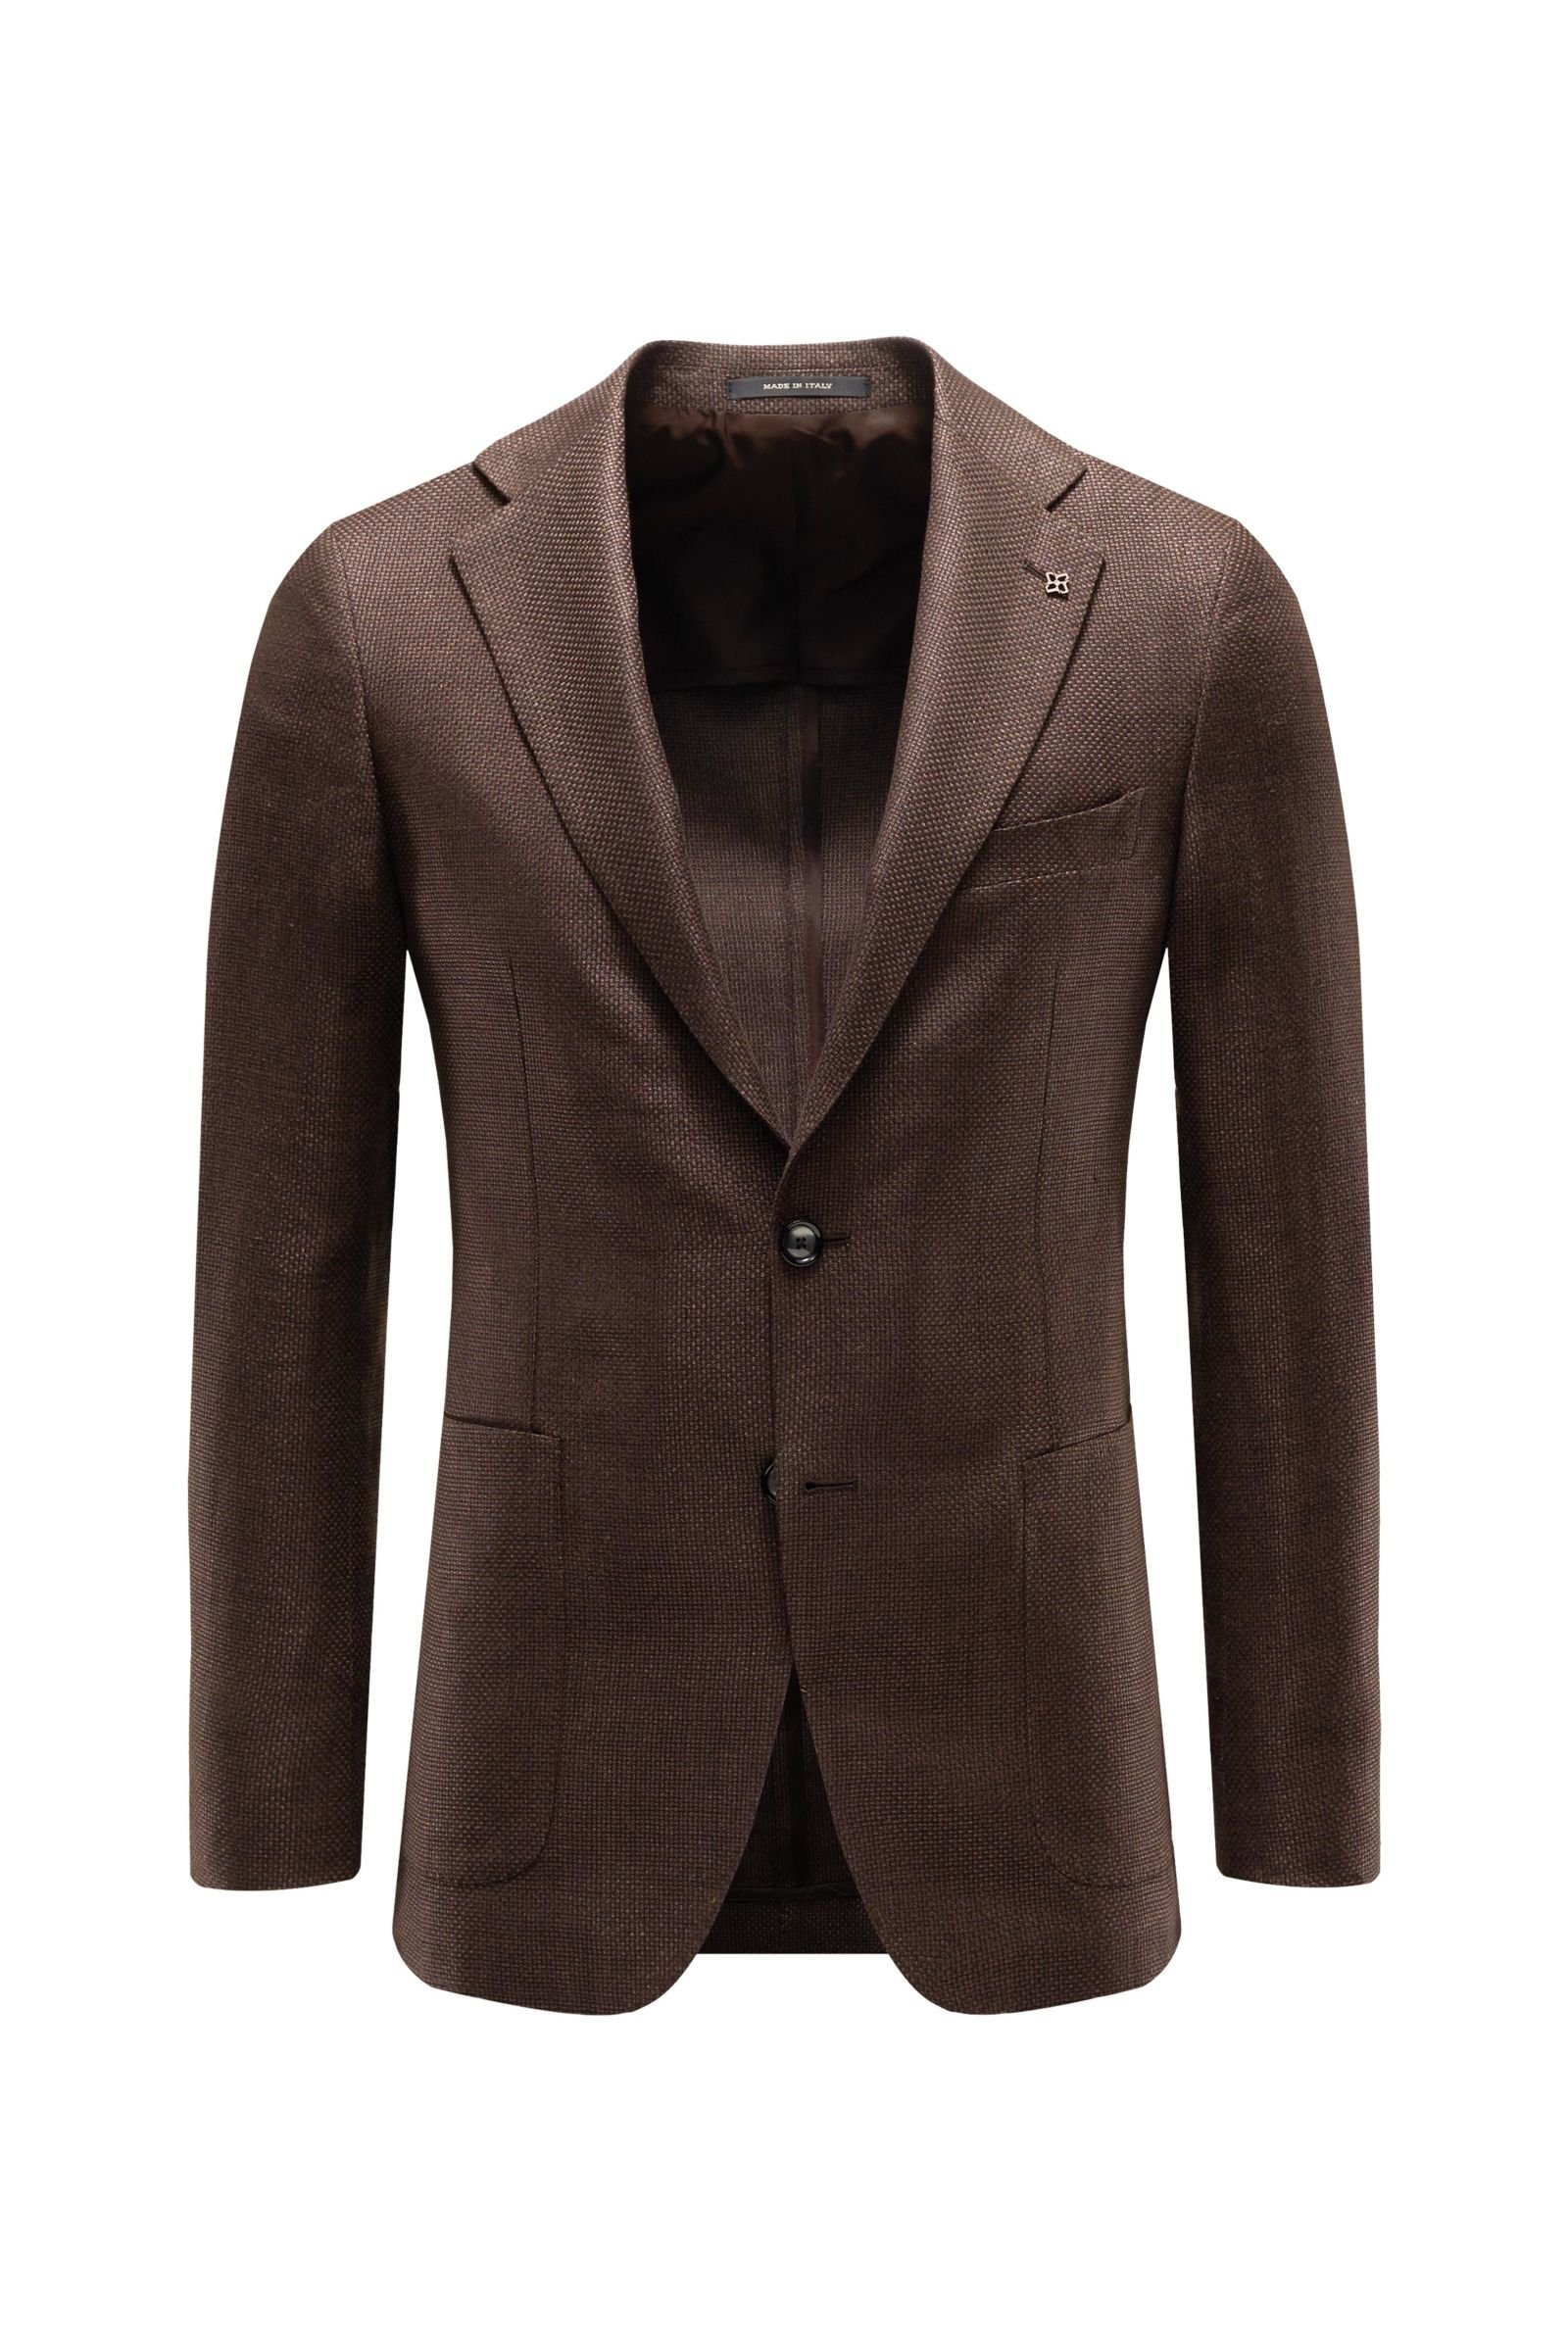 TAGLIATORE smart-casual jacket dark brown | BRAUN Hamburg